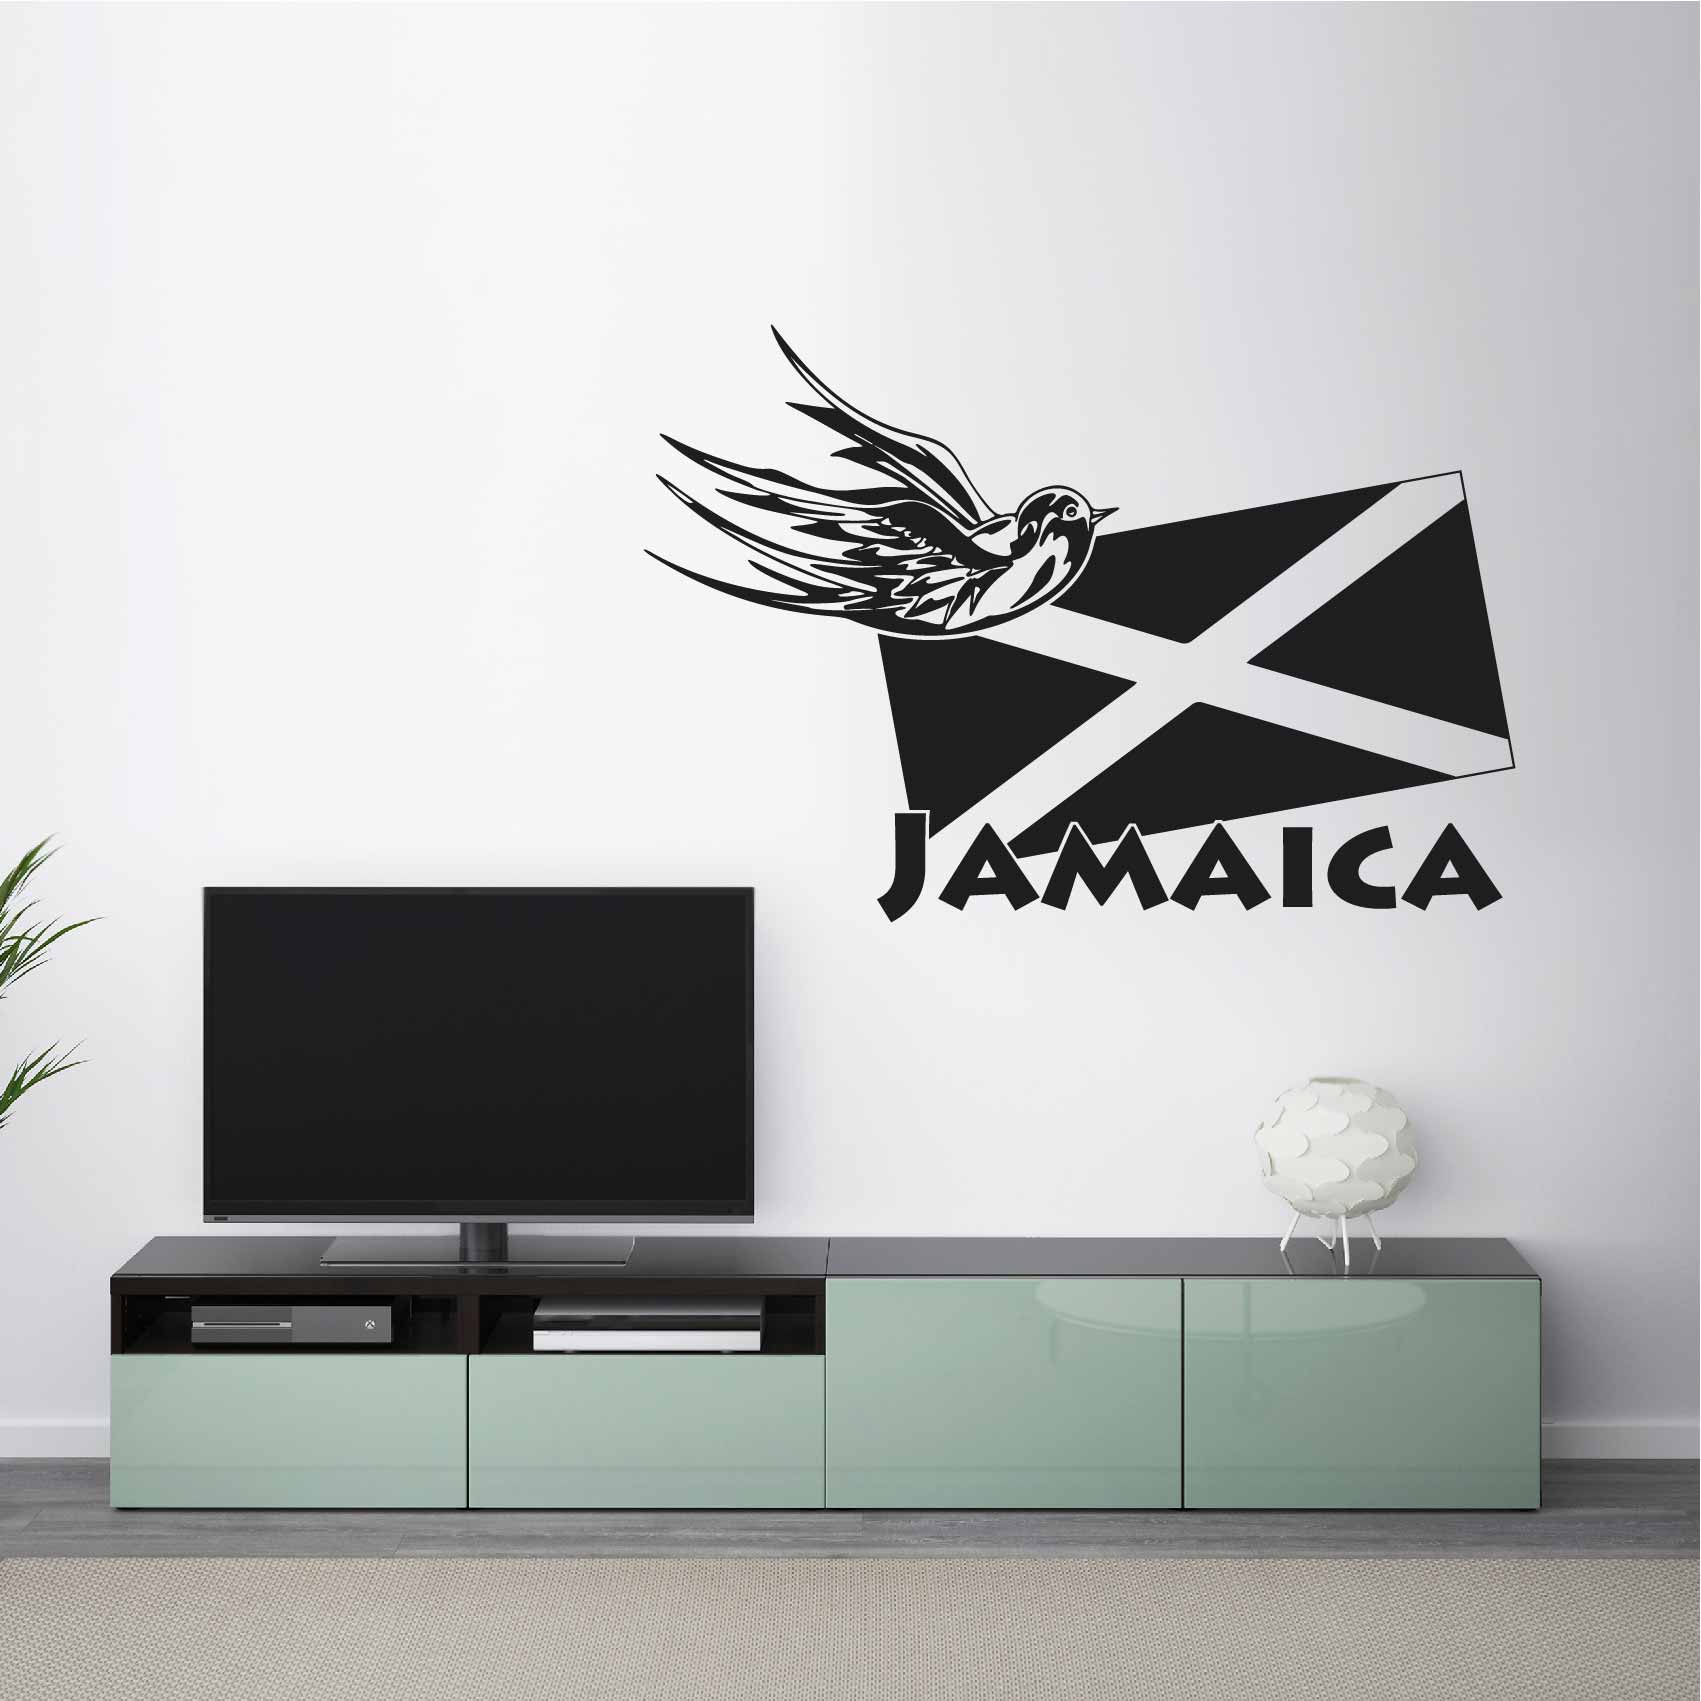 stickers-jamaique-ref29pays-stickers-muraux-jamaique-carte-drapeau-autocollant-deco-chambre-salon-sticker-mural-jamaica-voyage